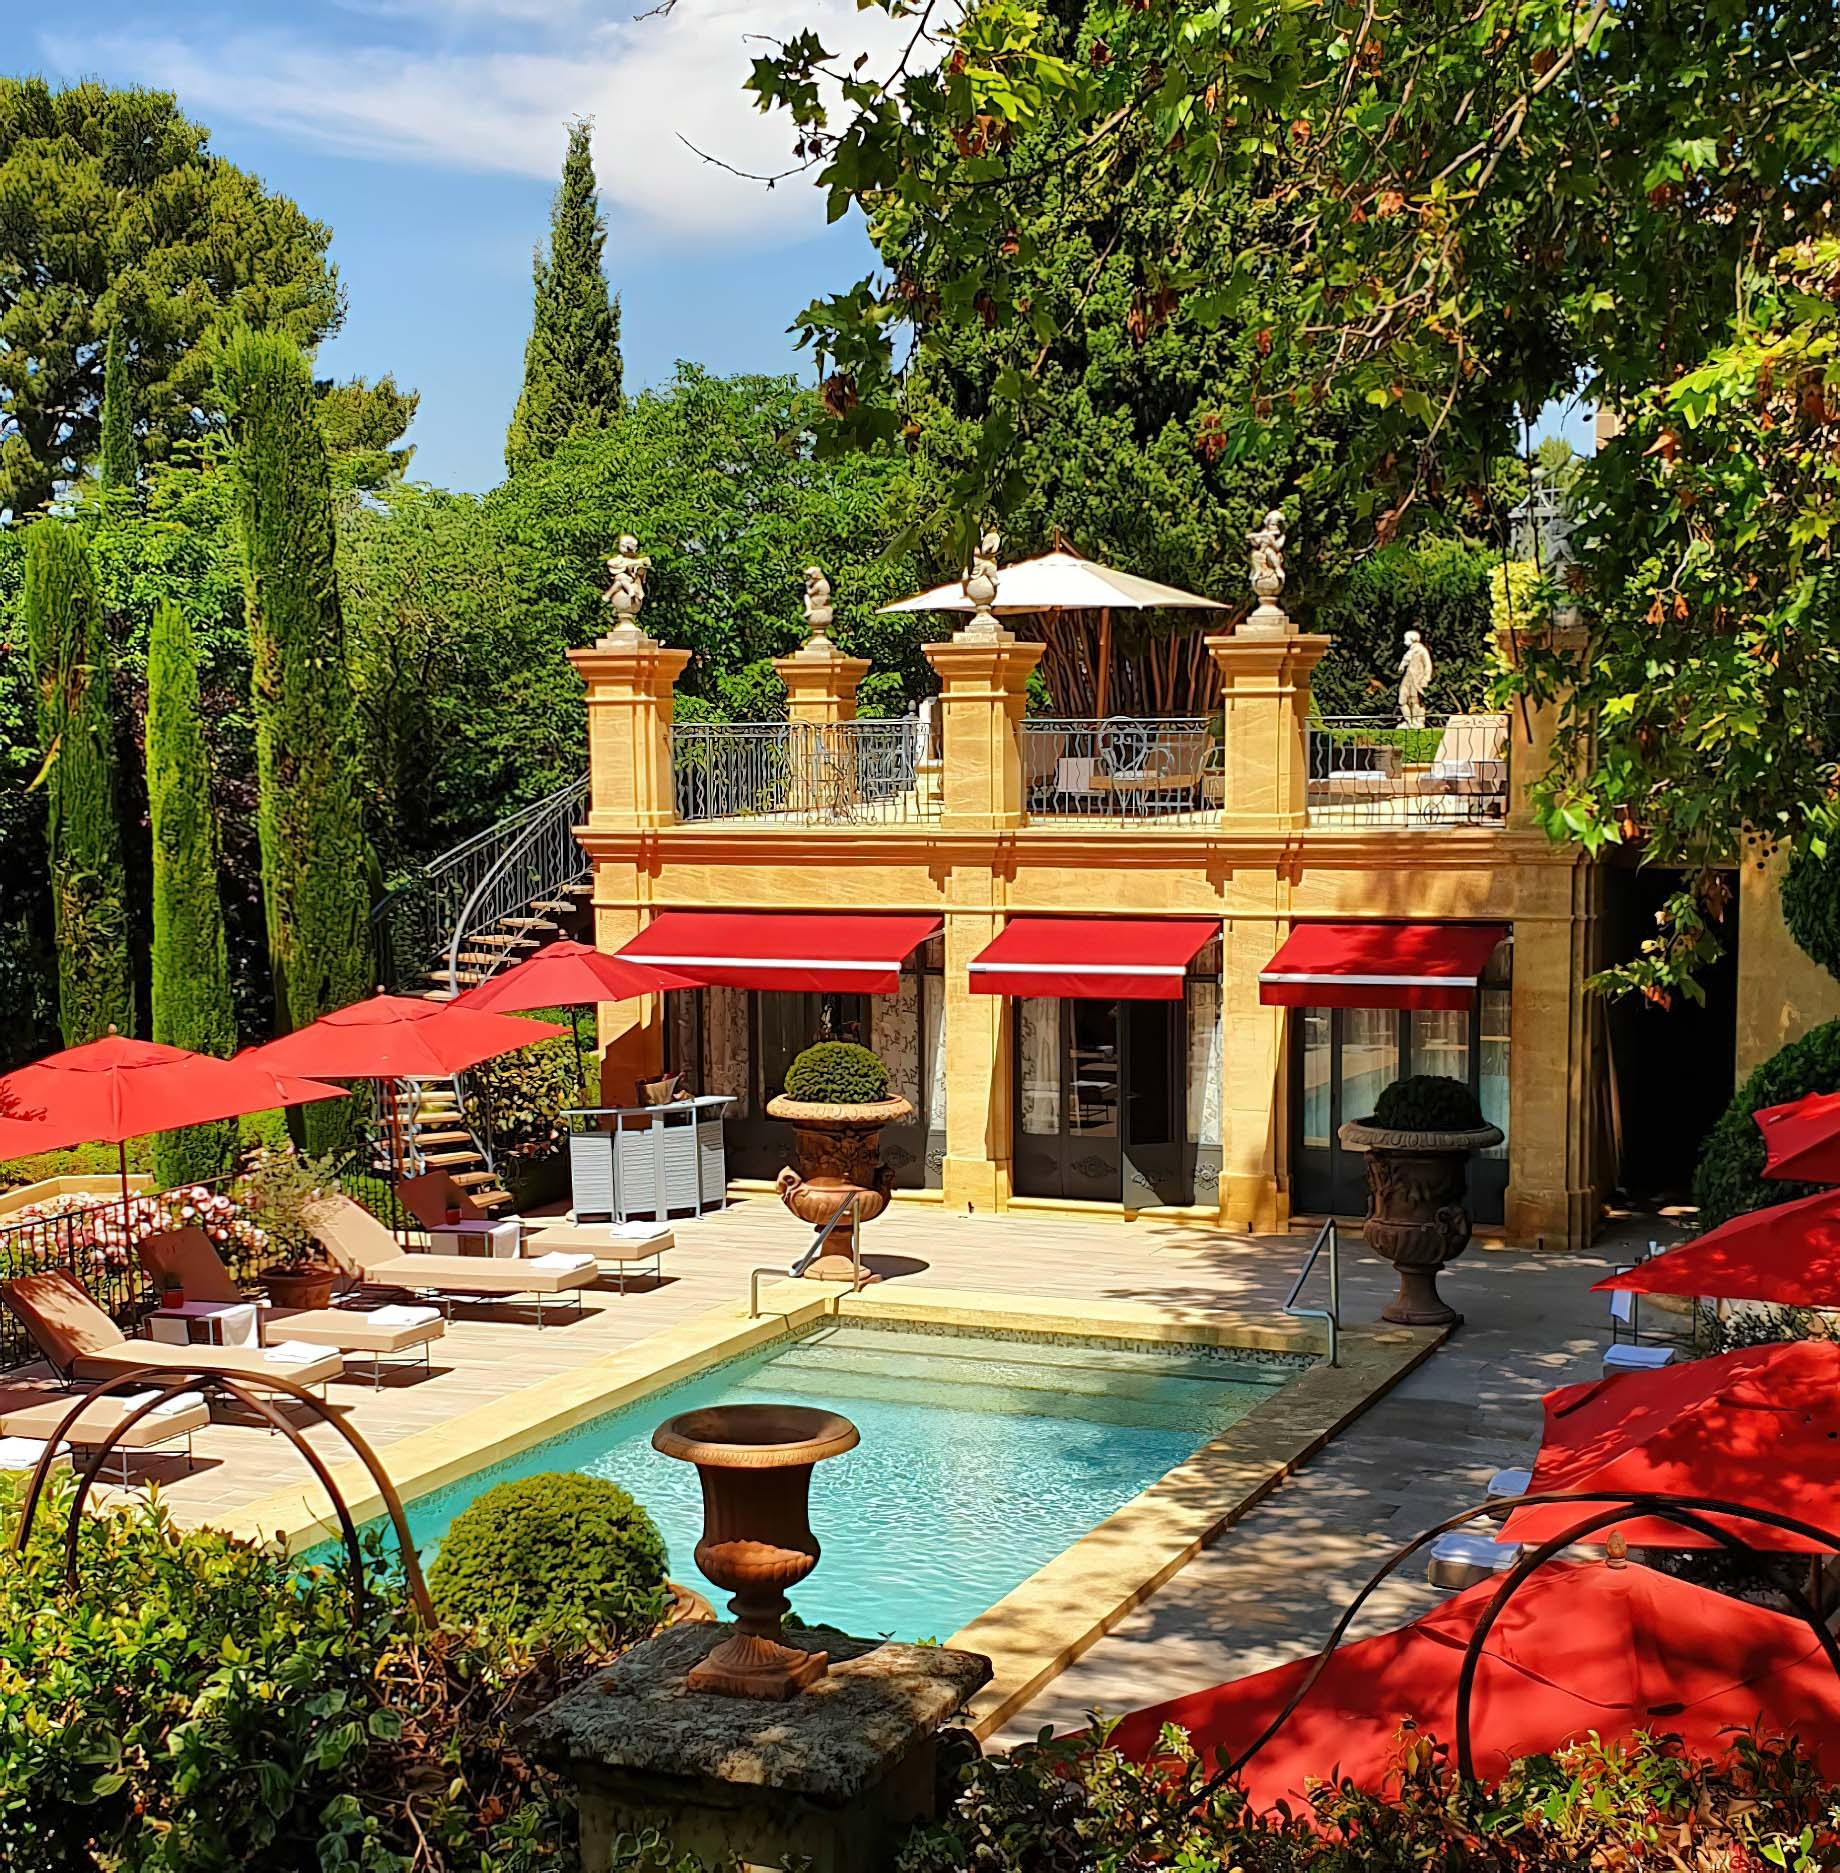 Villa Gallici Relais Châteaux Hotel – Aix-en-Provence, France – Pool Deck and Terrace